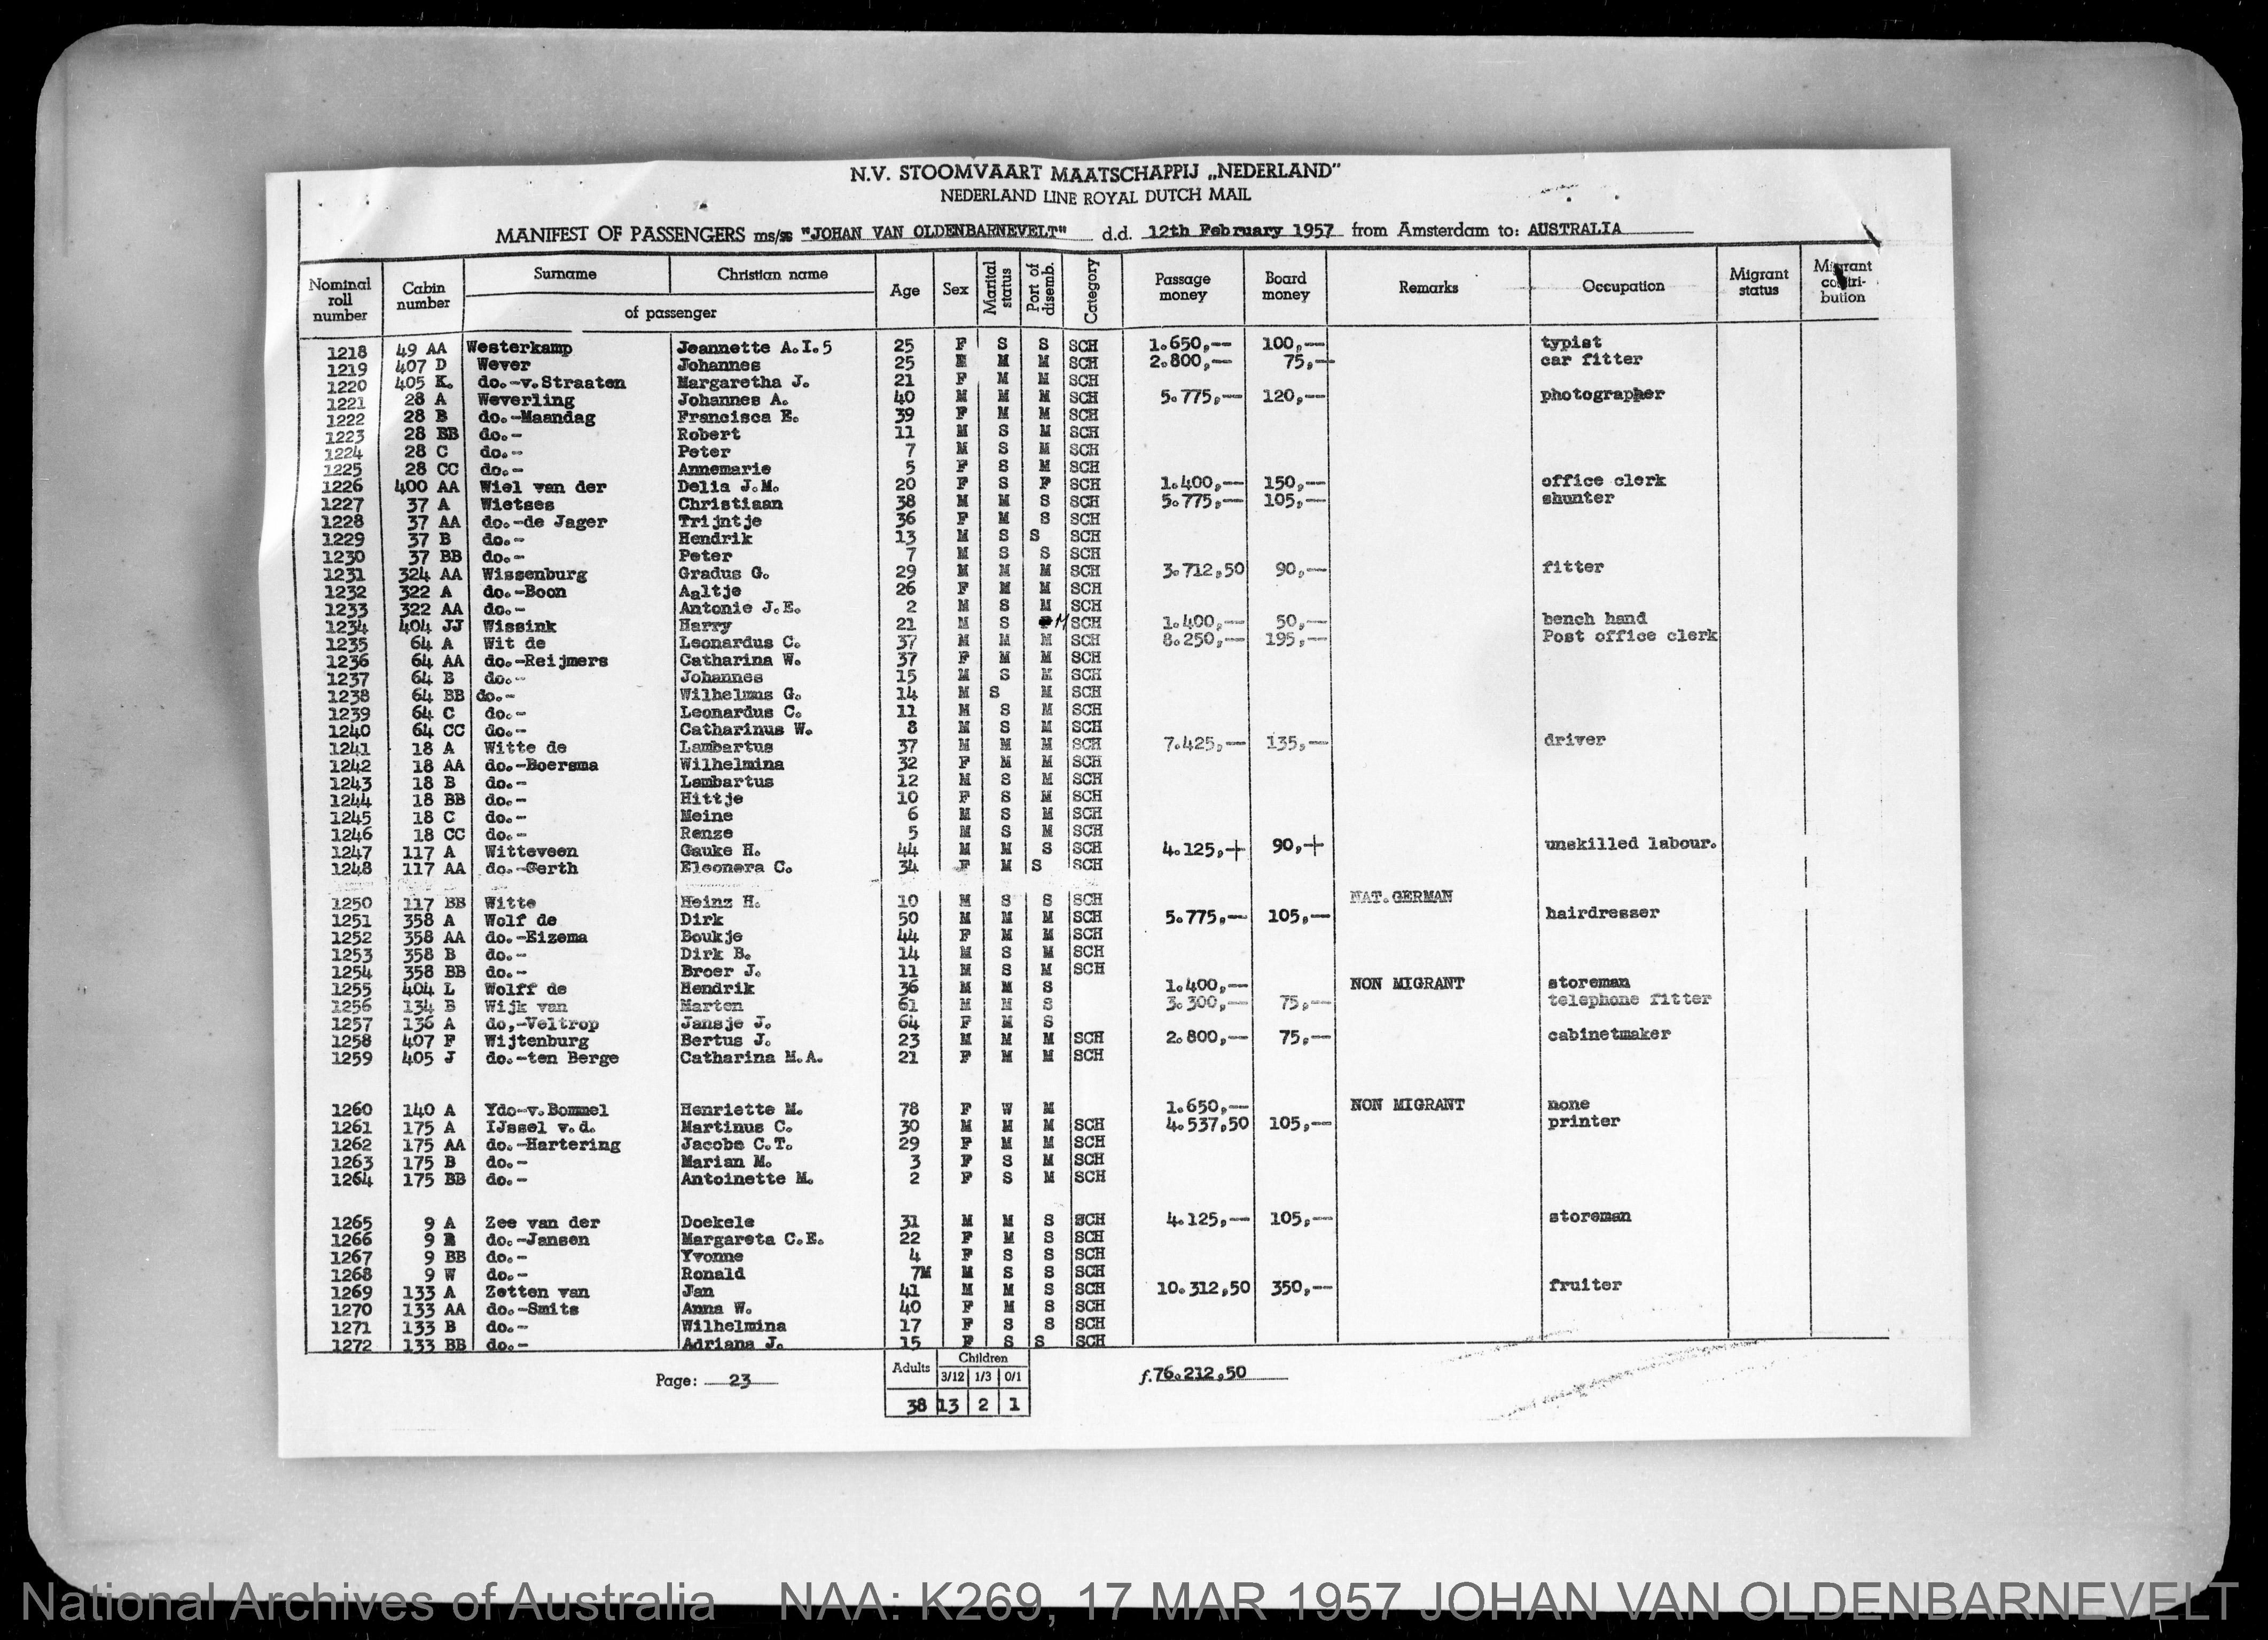 NAA: K269, 17 MAR 1957 JOHAN VAN OLDENBARNEVELT